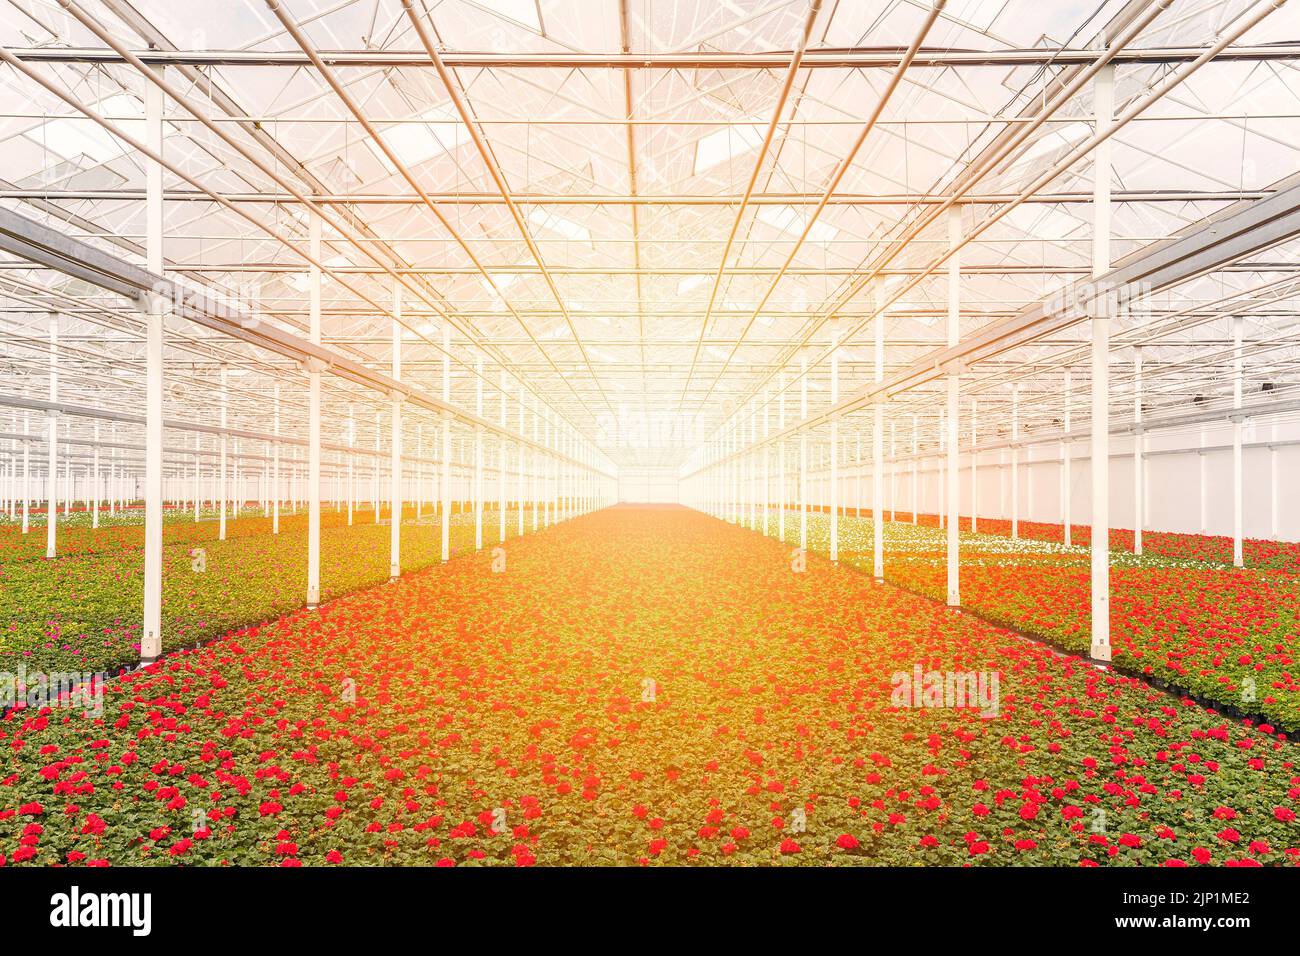 Amanecer sobre plantas de geranios rojos en flor en un invernadero holandés Foto de stock